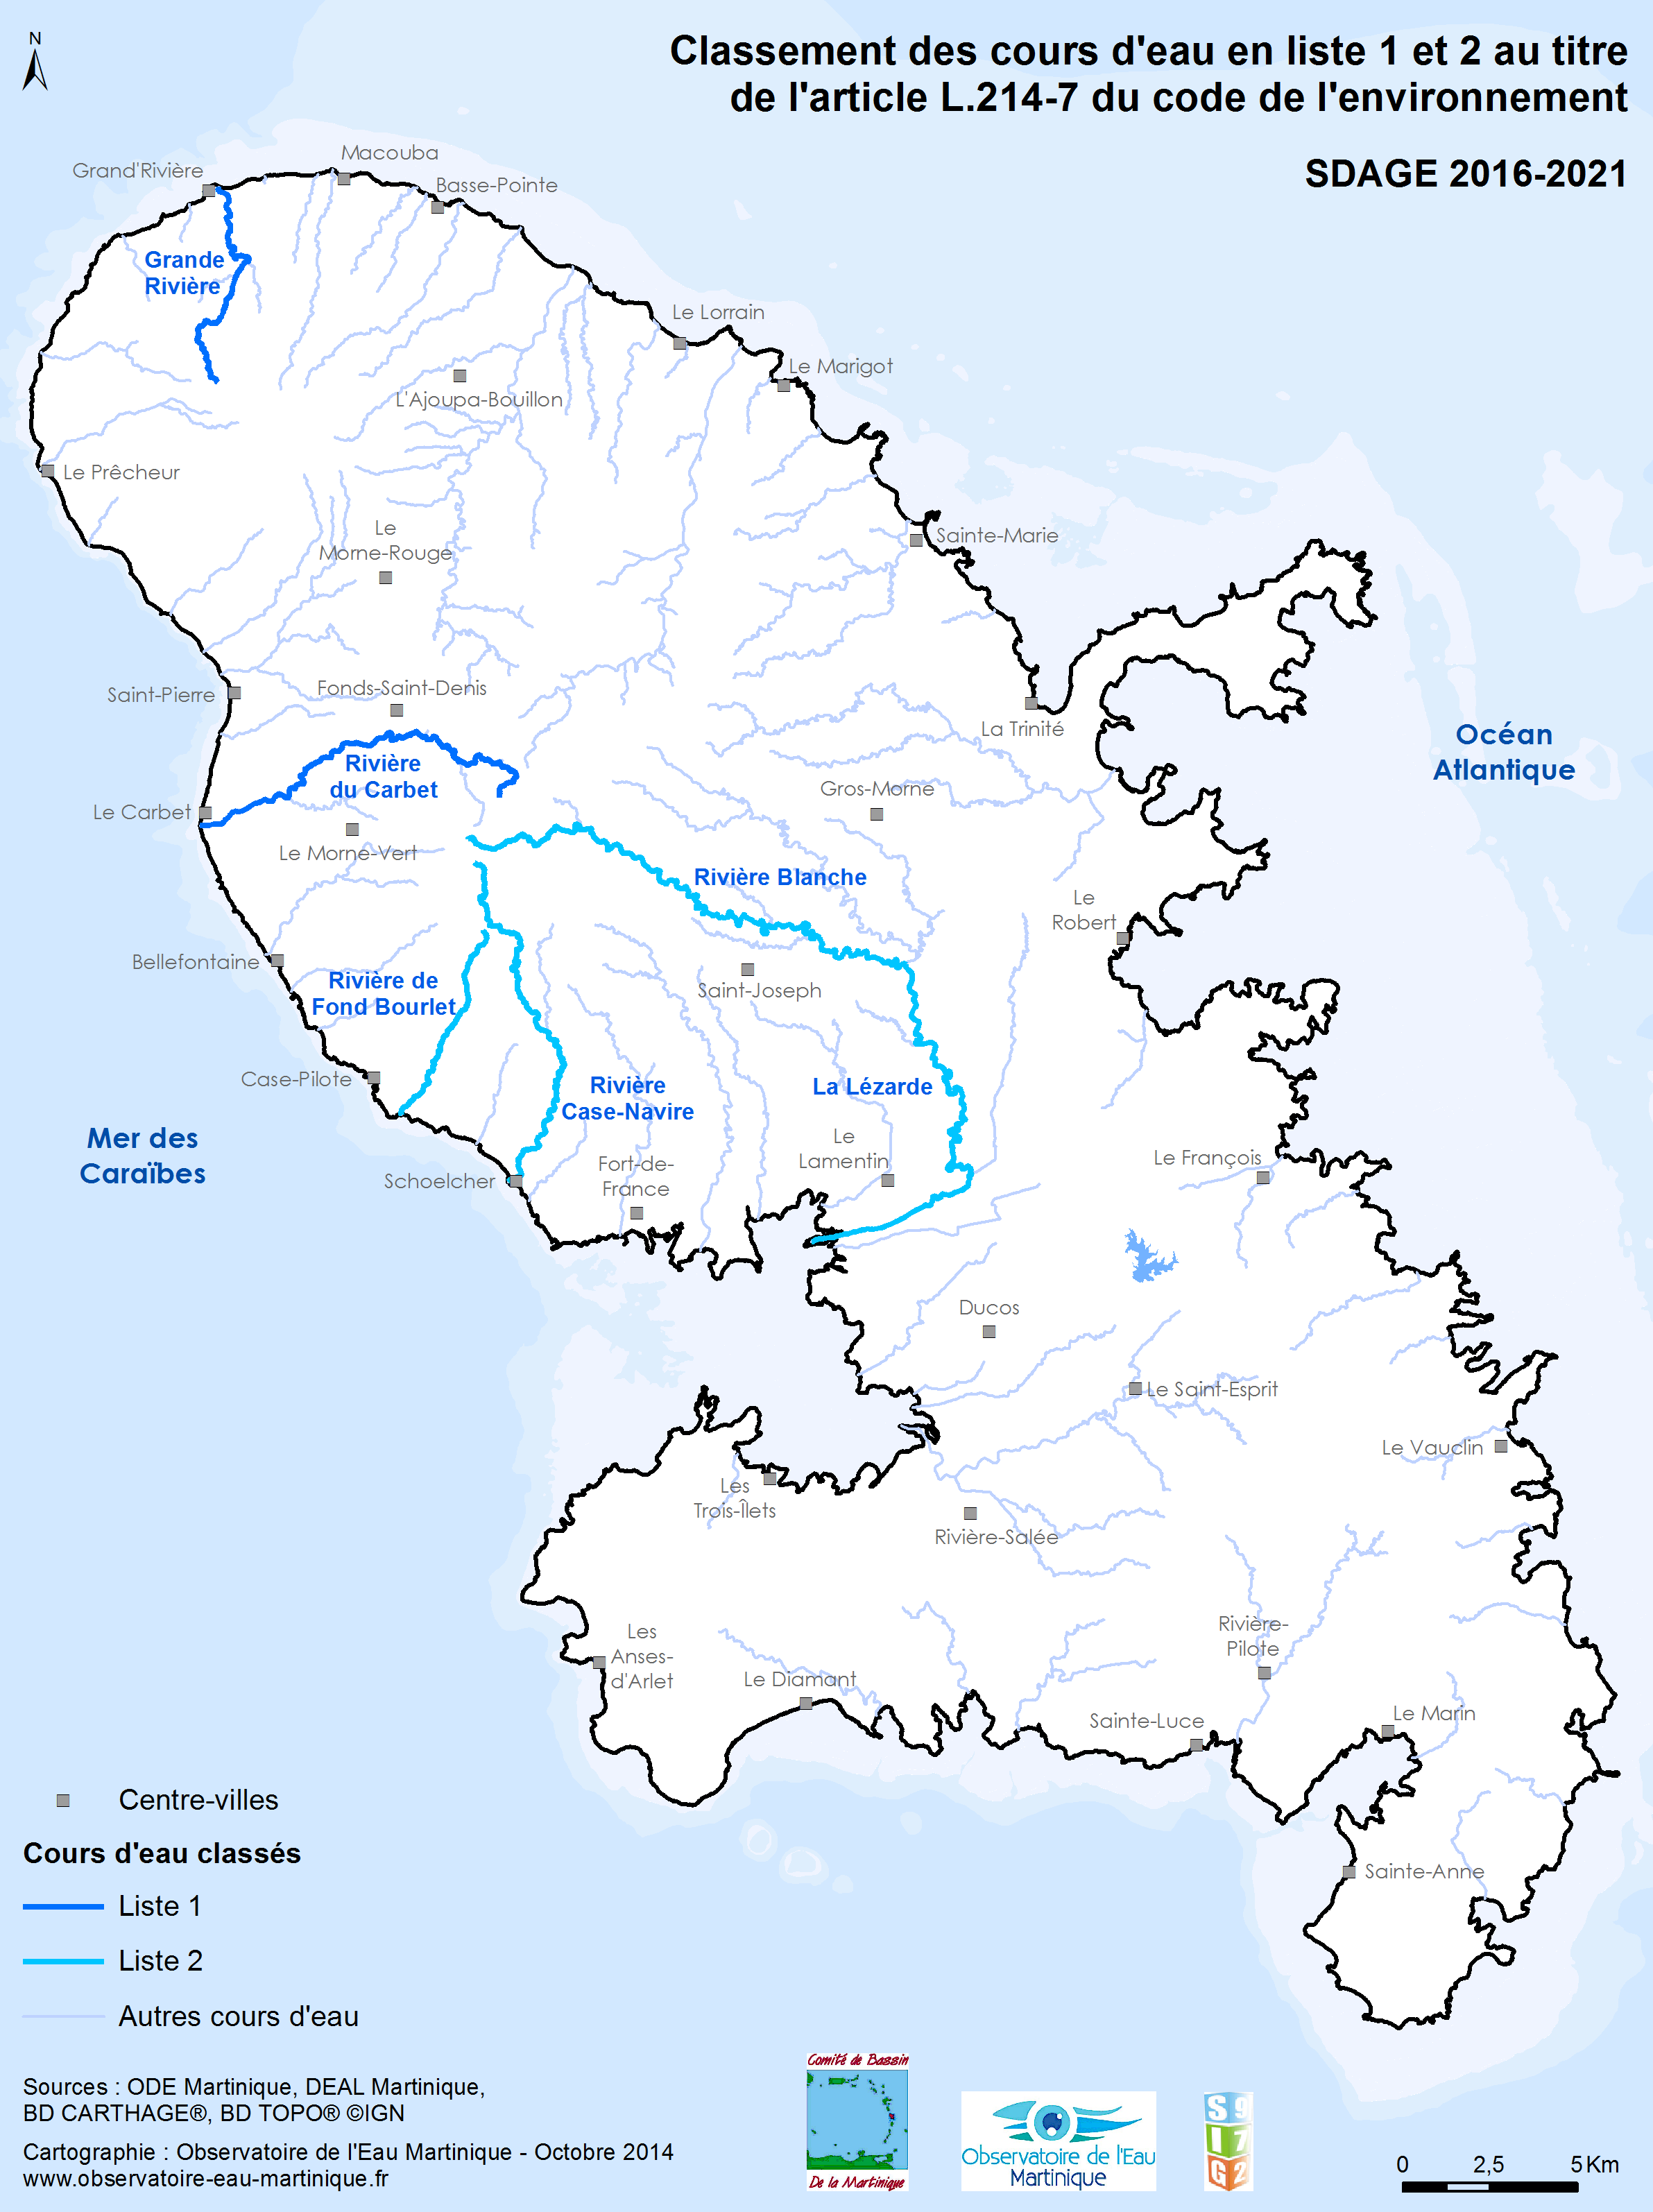 SDAGE 2016-2021 - Classement des cours d'eau en liste 1 et 2 